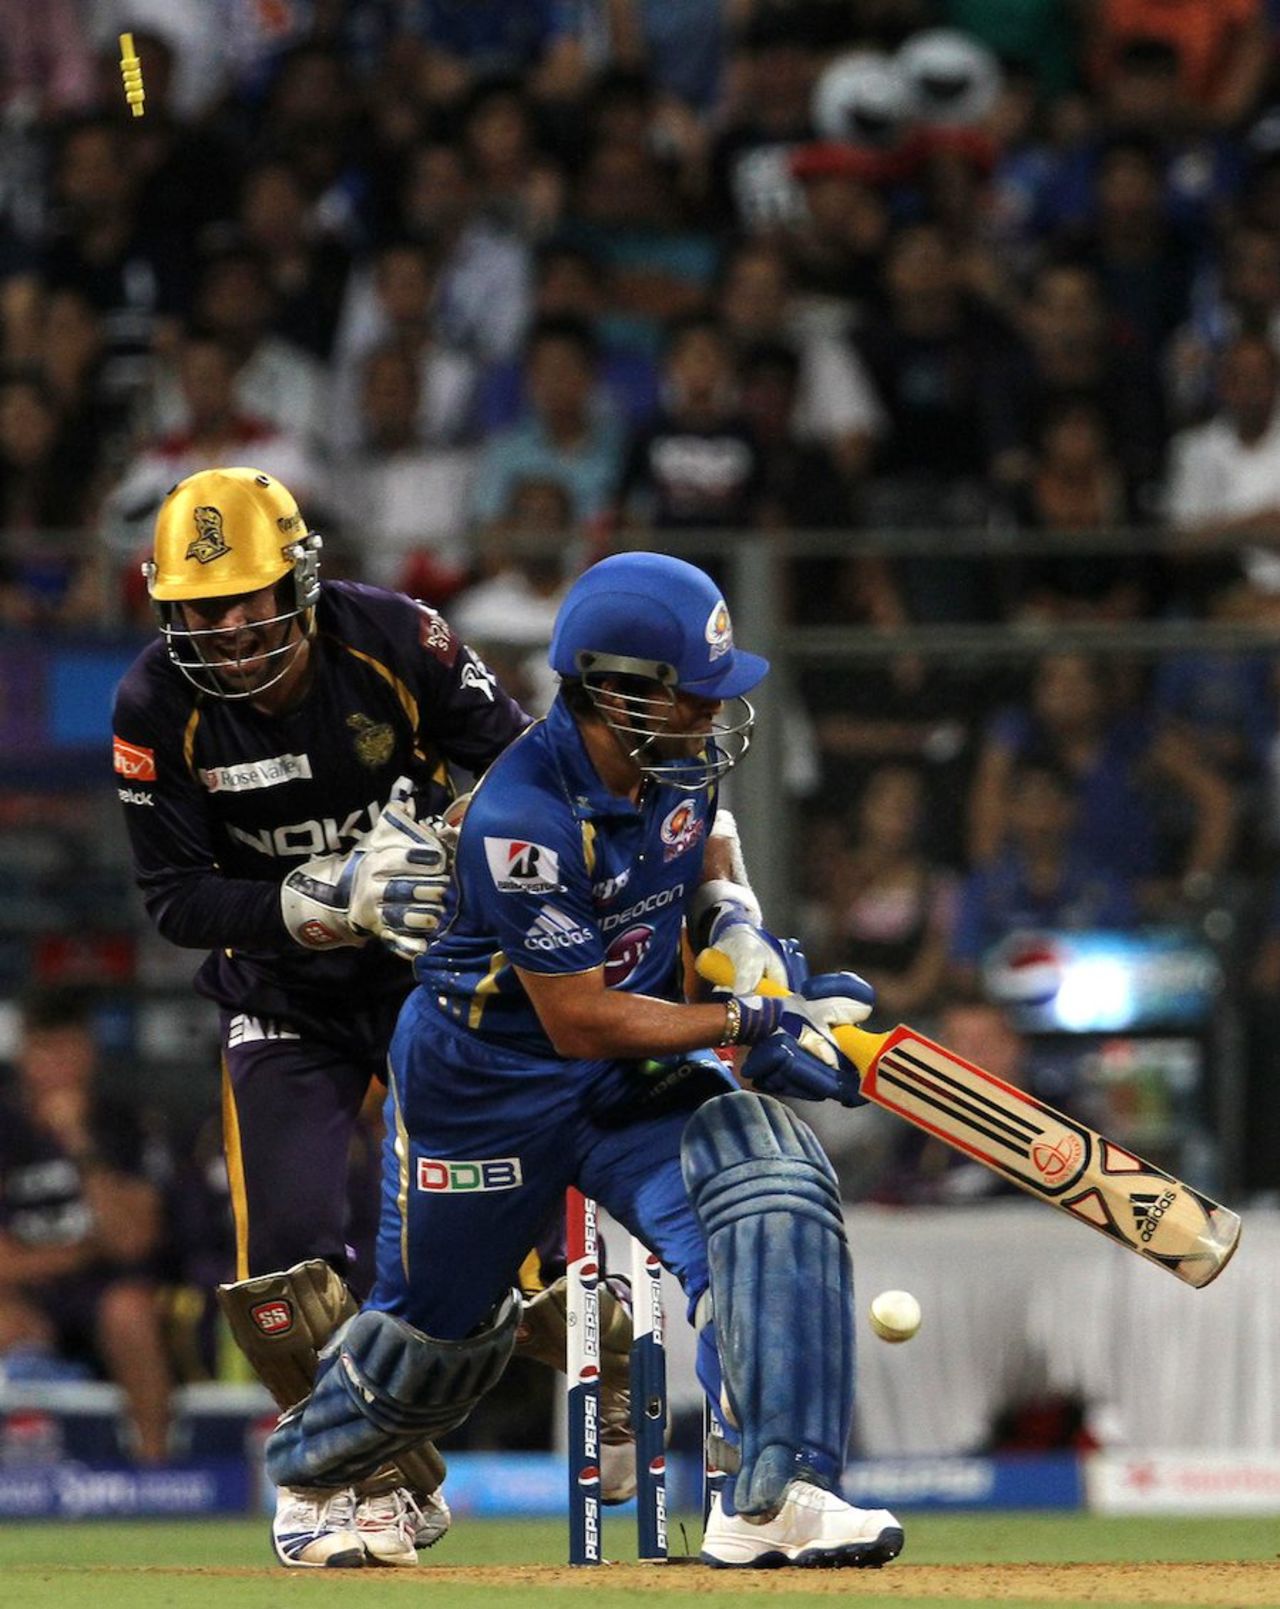 Sachin Tendulkar was bowled while playing the paddle, Mumbai Indians v Kolkata Knight Riders, IPL, Mumbai, May 7, 2013